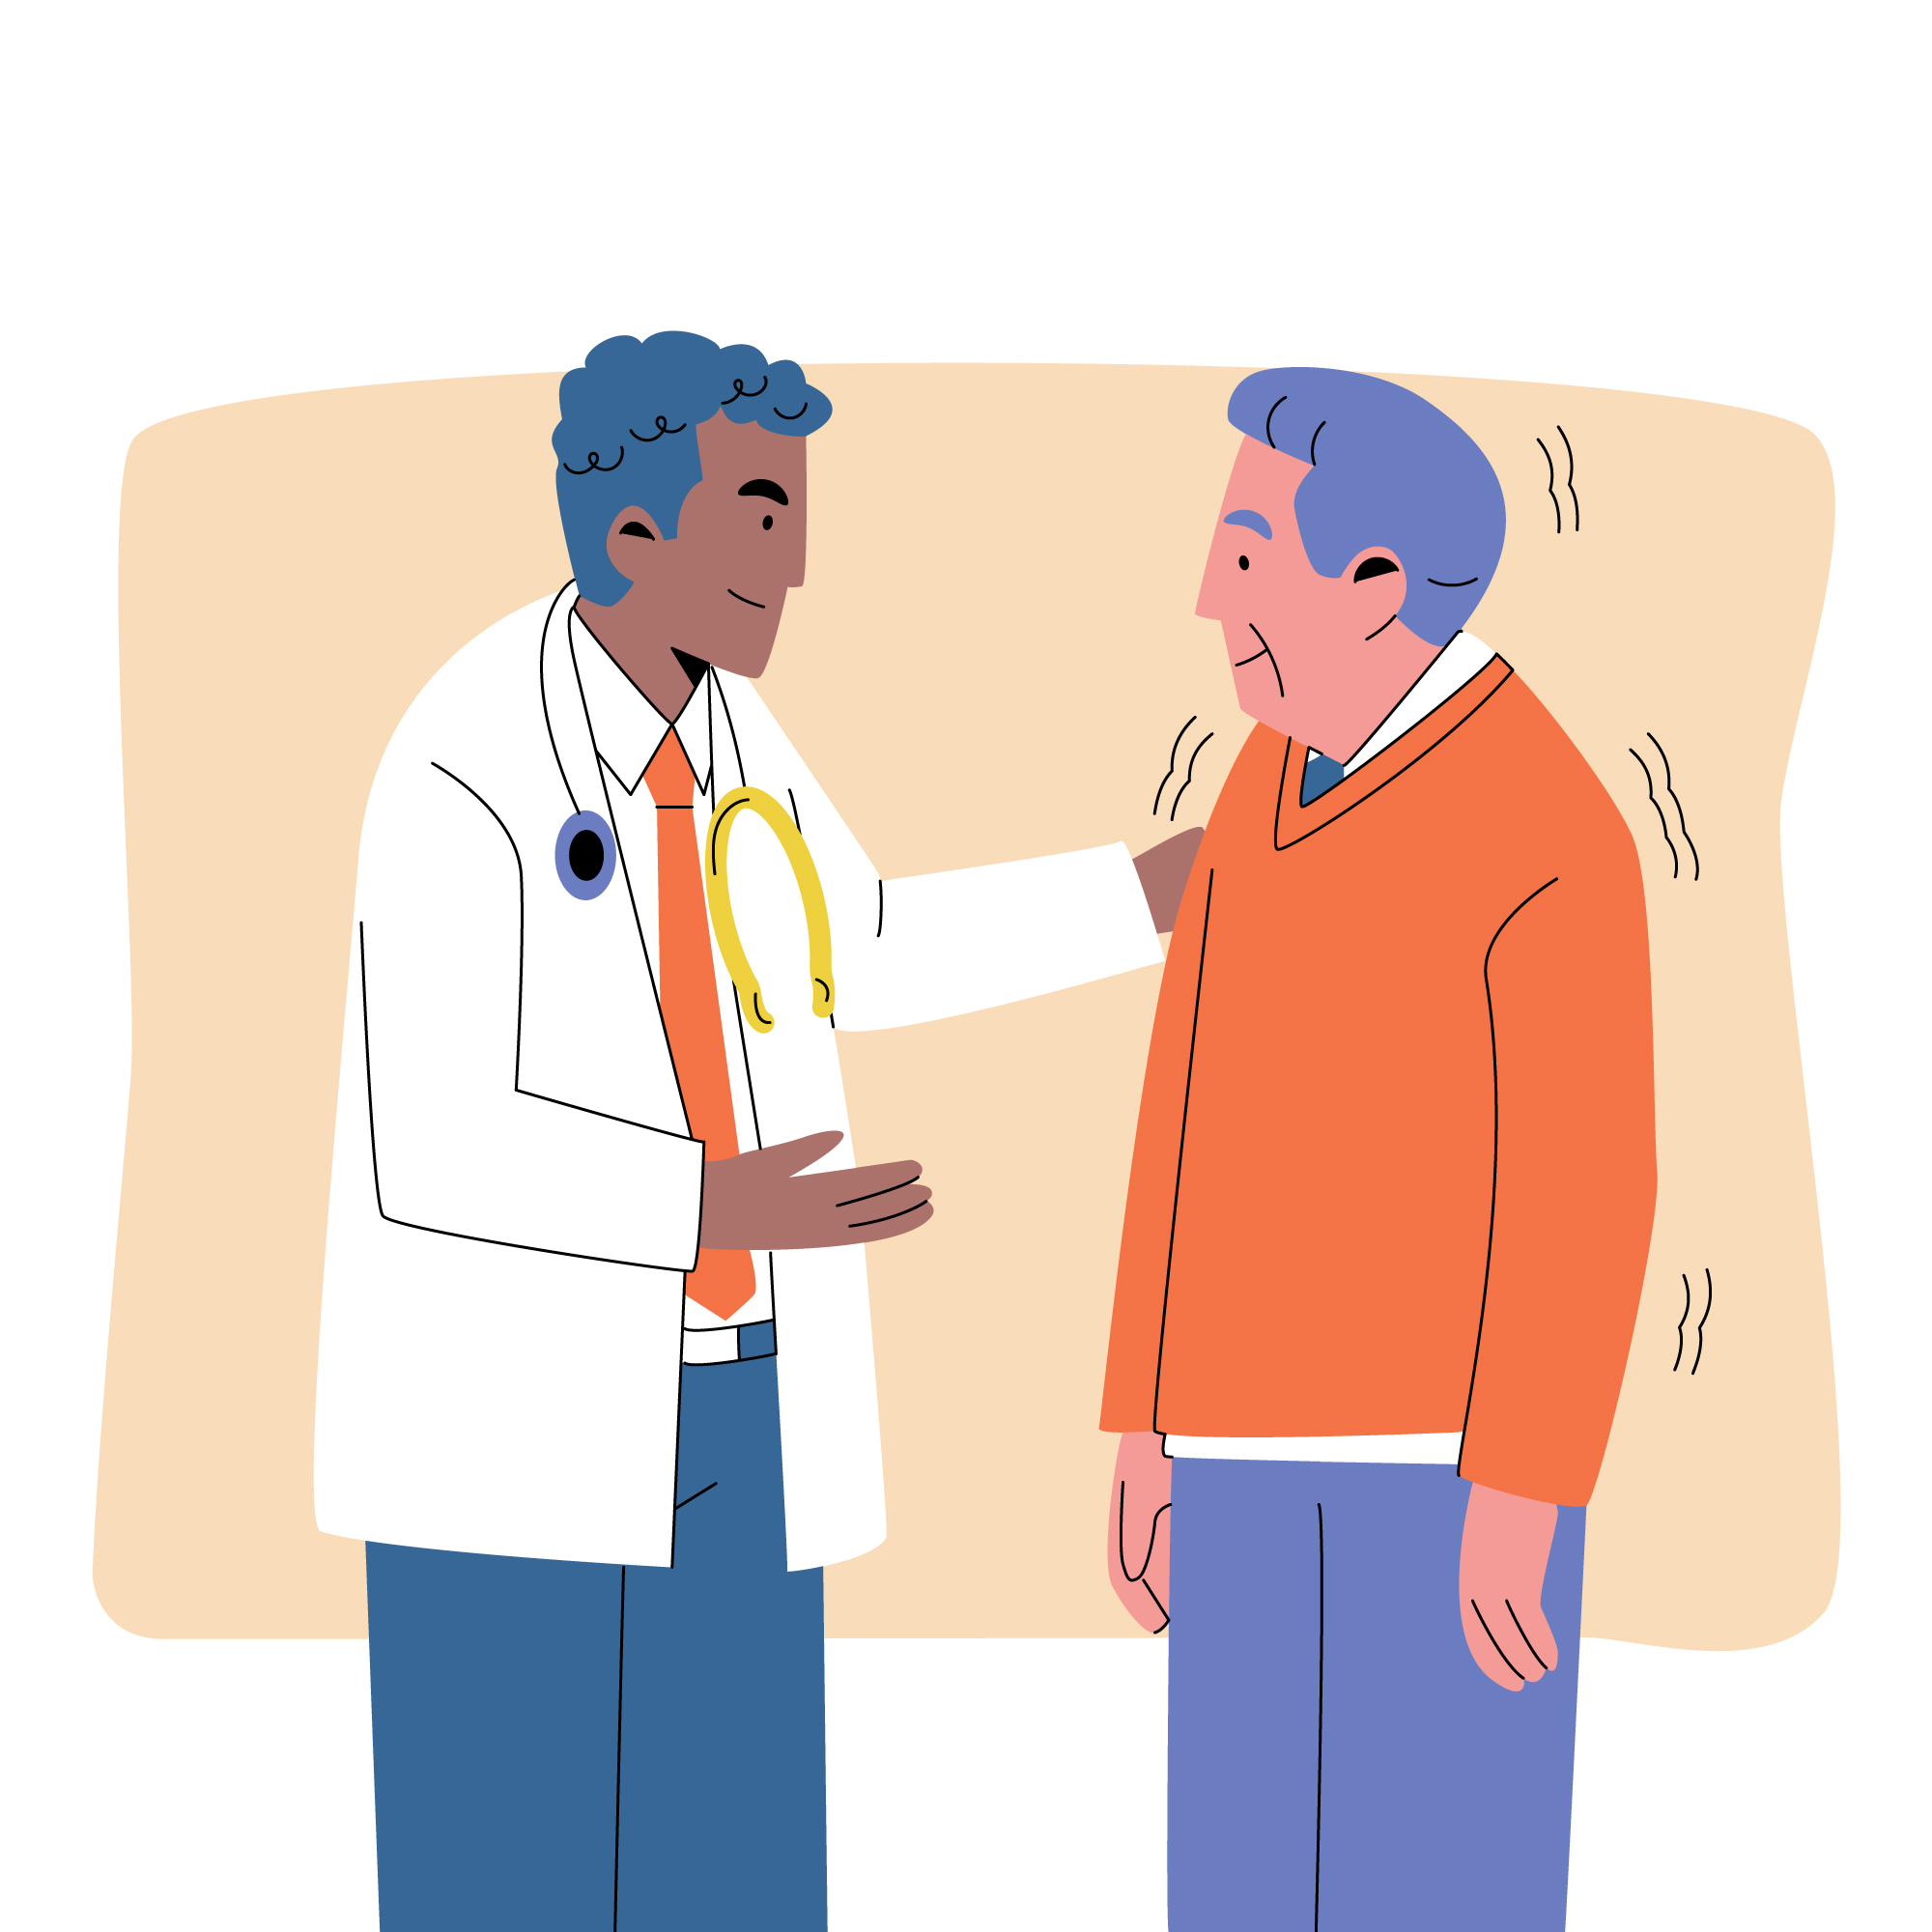 Na imagem, uma ilustração de um médico e um paciente. O médico está com a mão no ombro do paciente